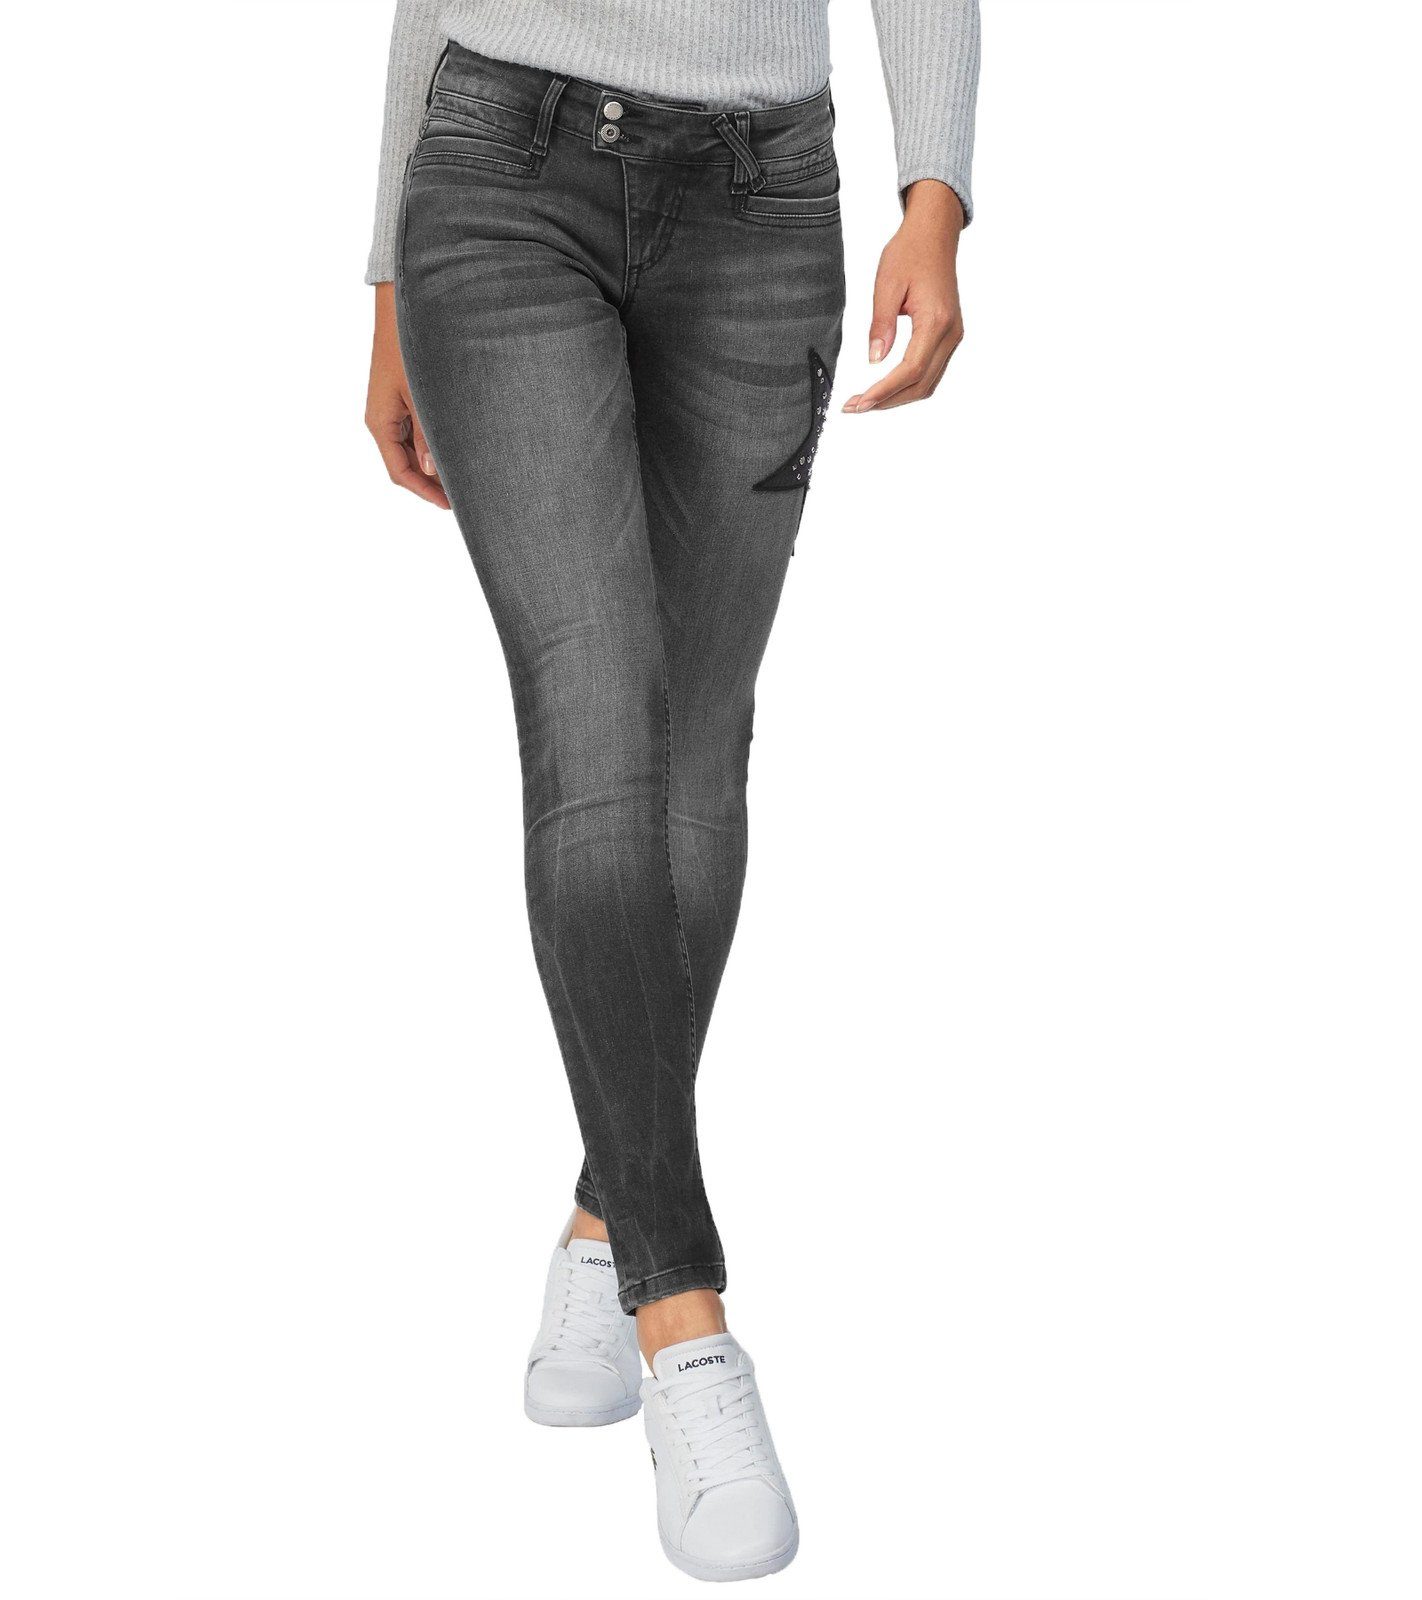 Glücksstern Slim-fit-Jeans »Glücksstern Hose Denim modische Damen Slim-Fit-Jeans  mit Sternapplikation 4-Pocket-Jeans Schwarz« online kaufen | OTTO